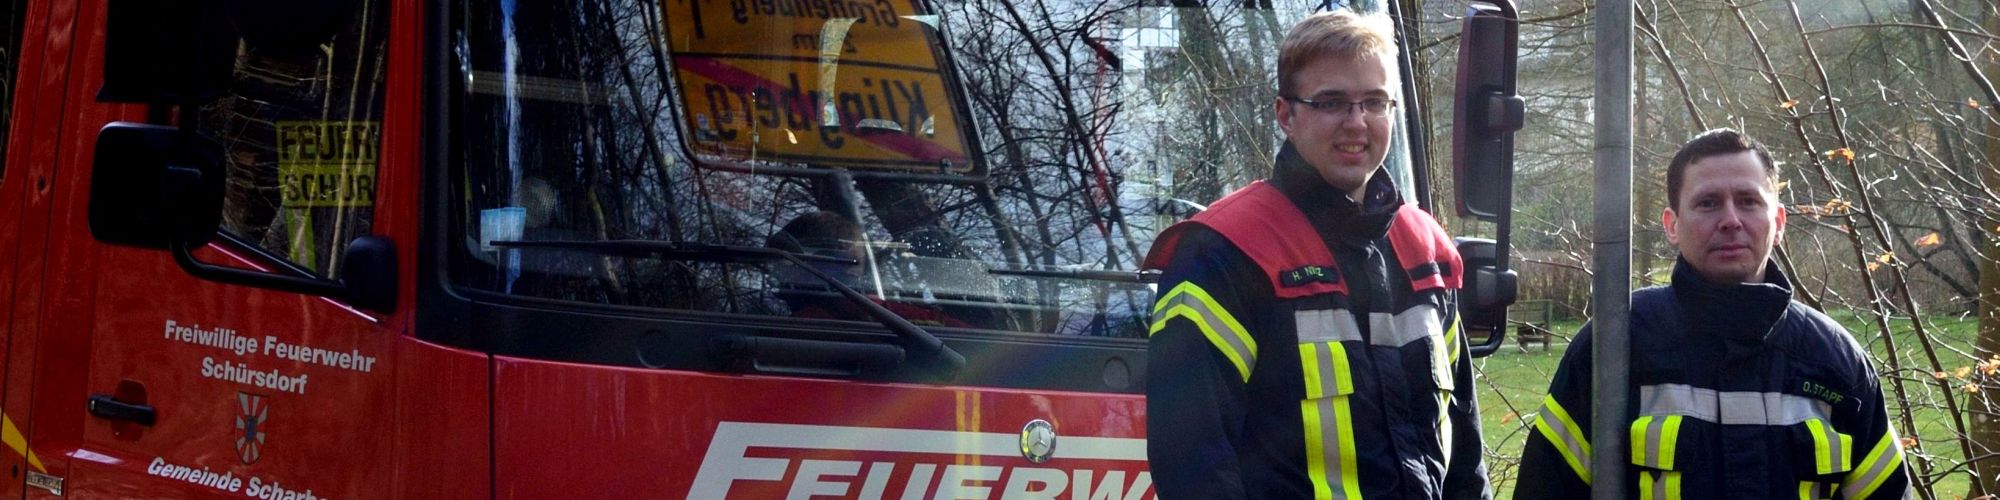 Freiwillige Feuerwehrmnner aus Schrsdorf